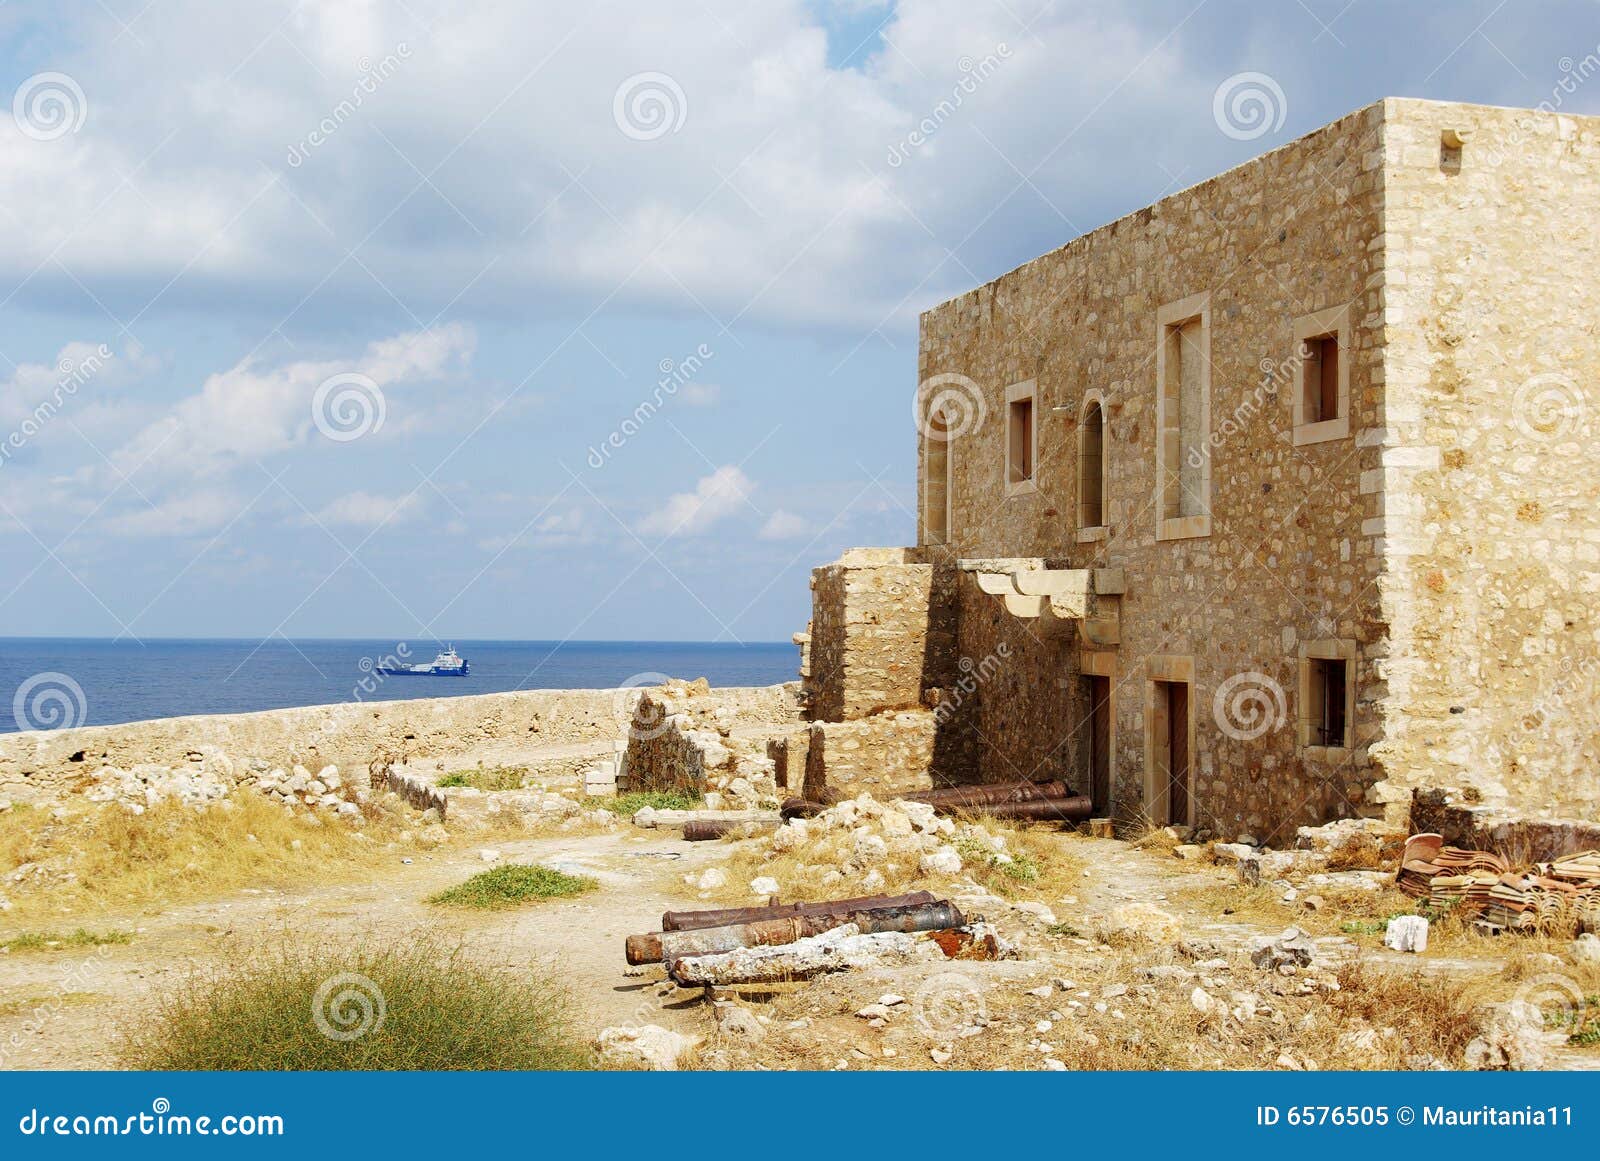 Greece, Crete, Retimno. Greece, console Crete, a cidade de Retimno. Uma fortaleza velha da cidade.